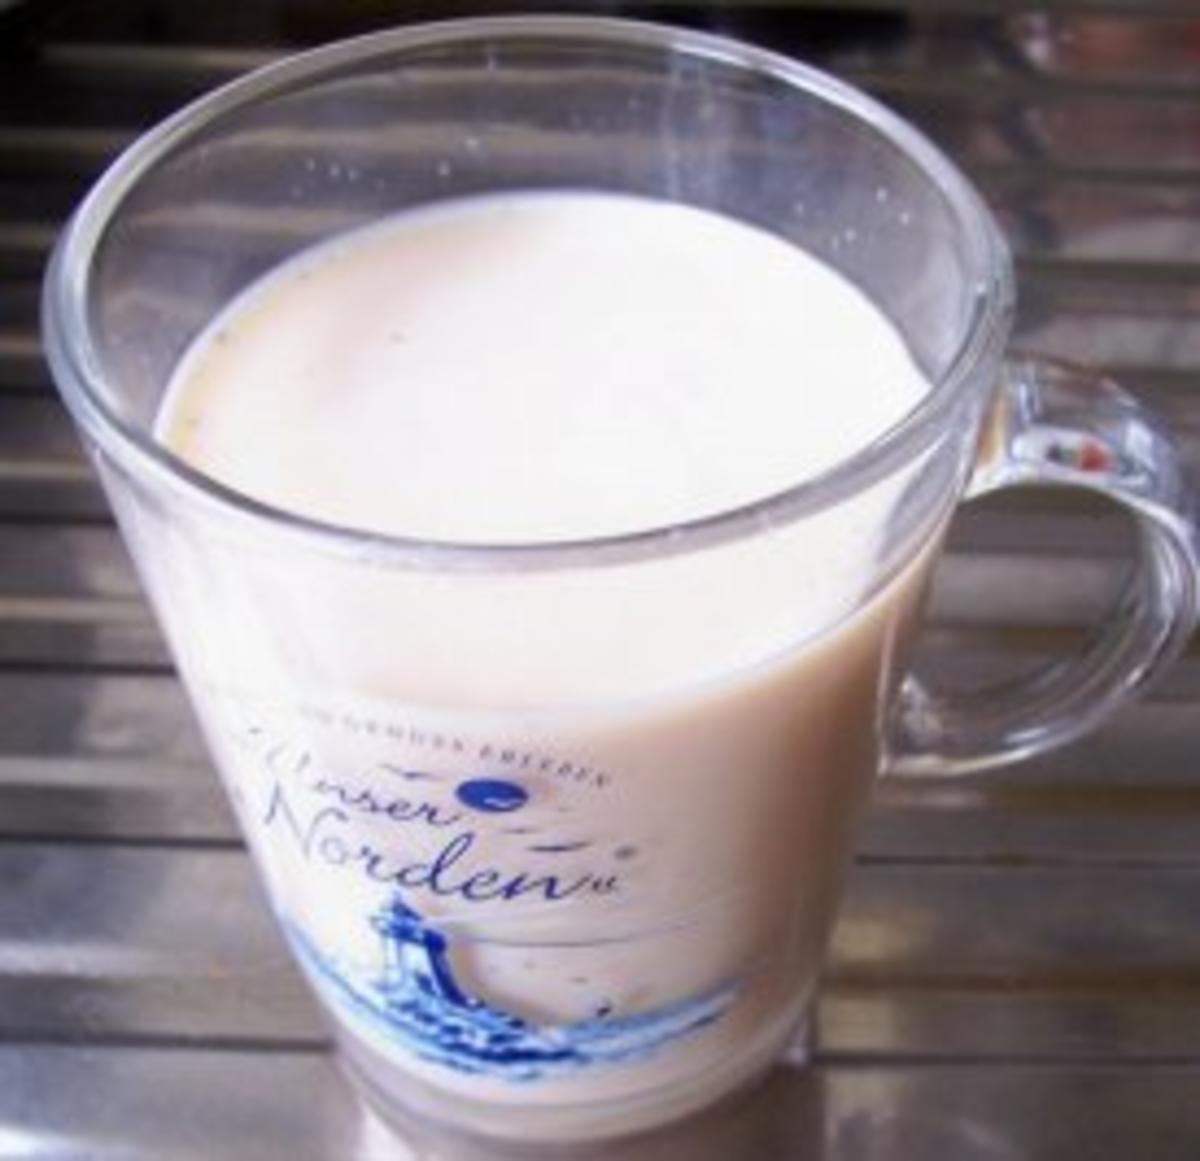 Getränk: Tee-Milch - Rezept